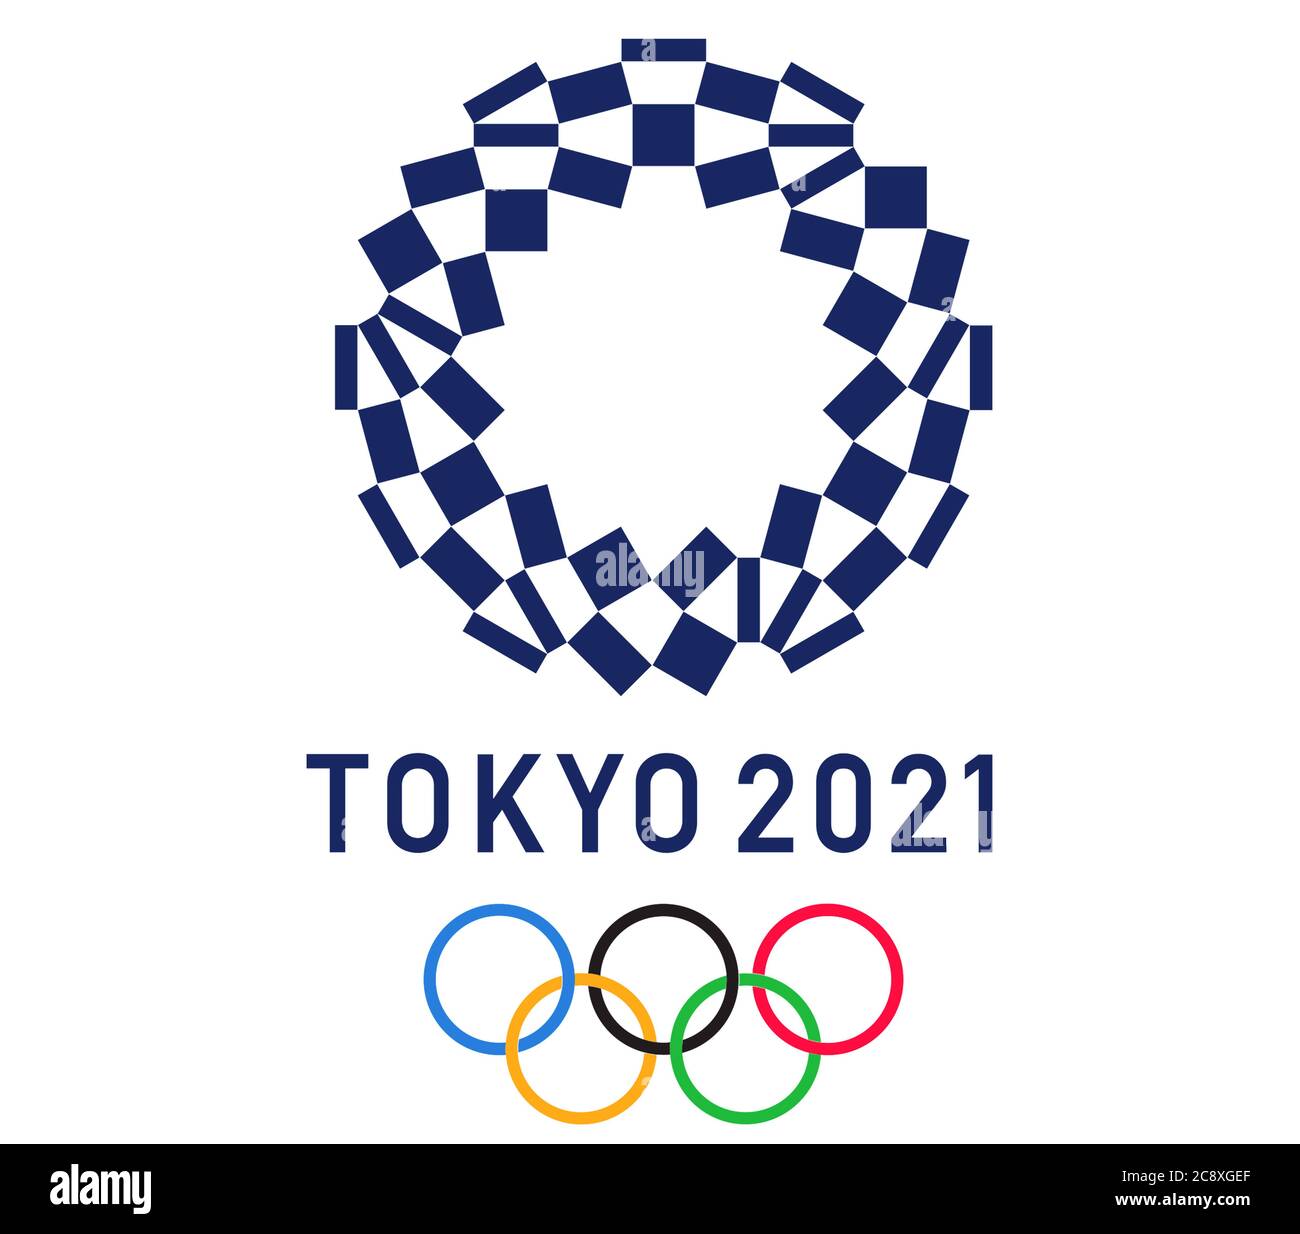 Juegos Olímpicos de Tokio 2021 Foto de stock